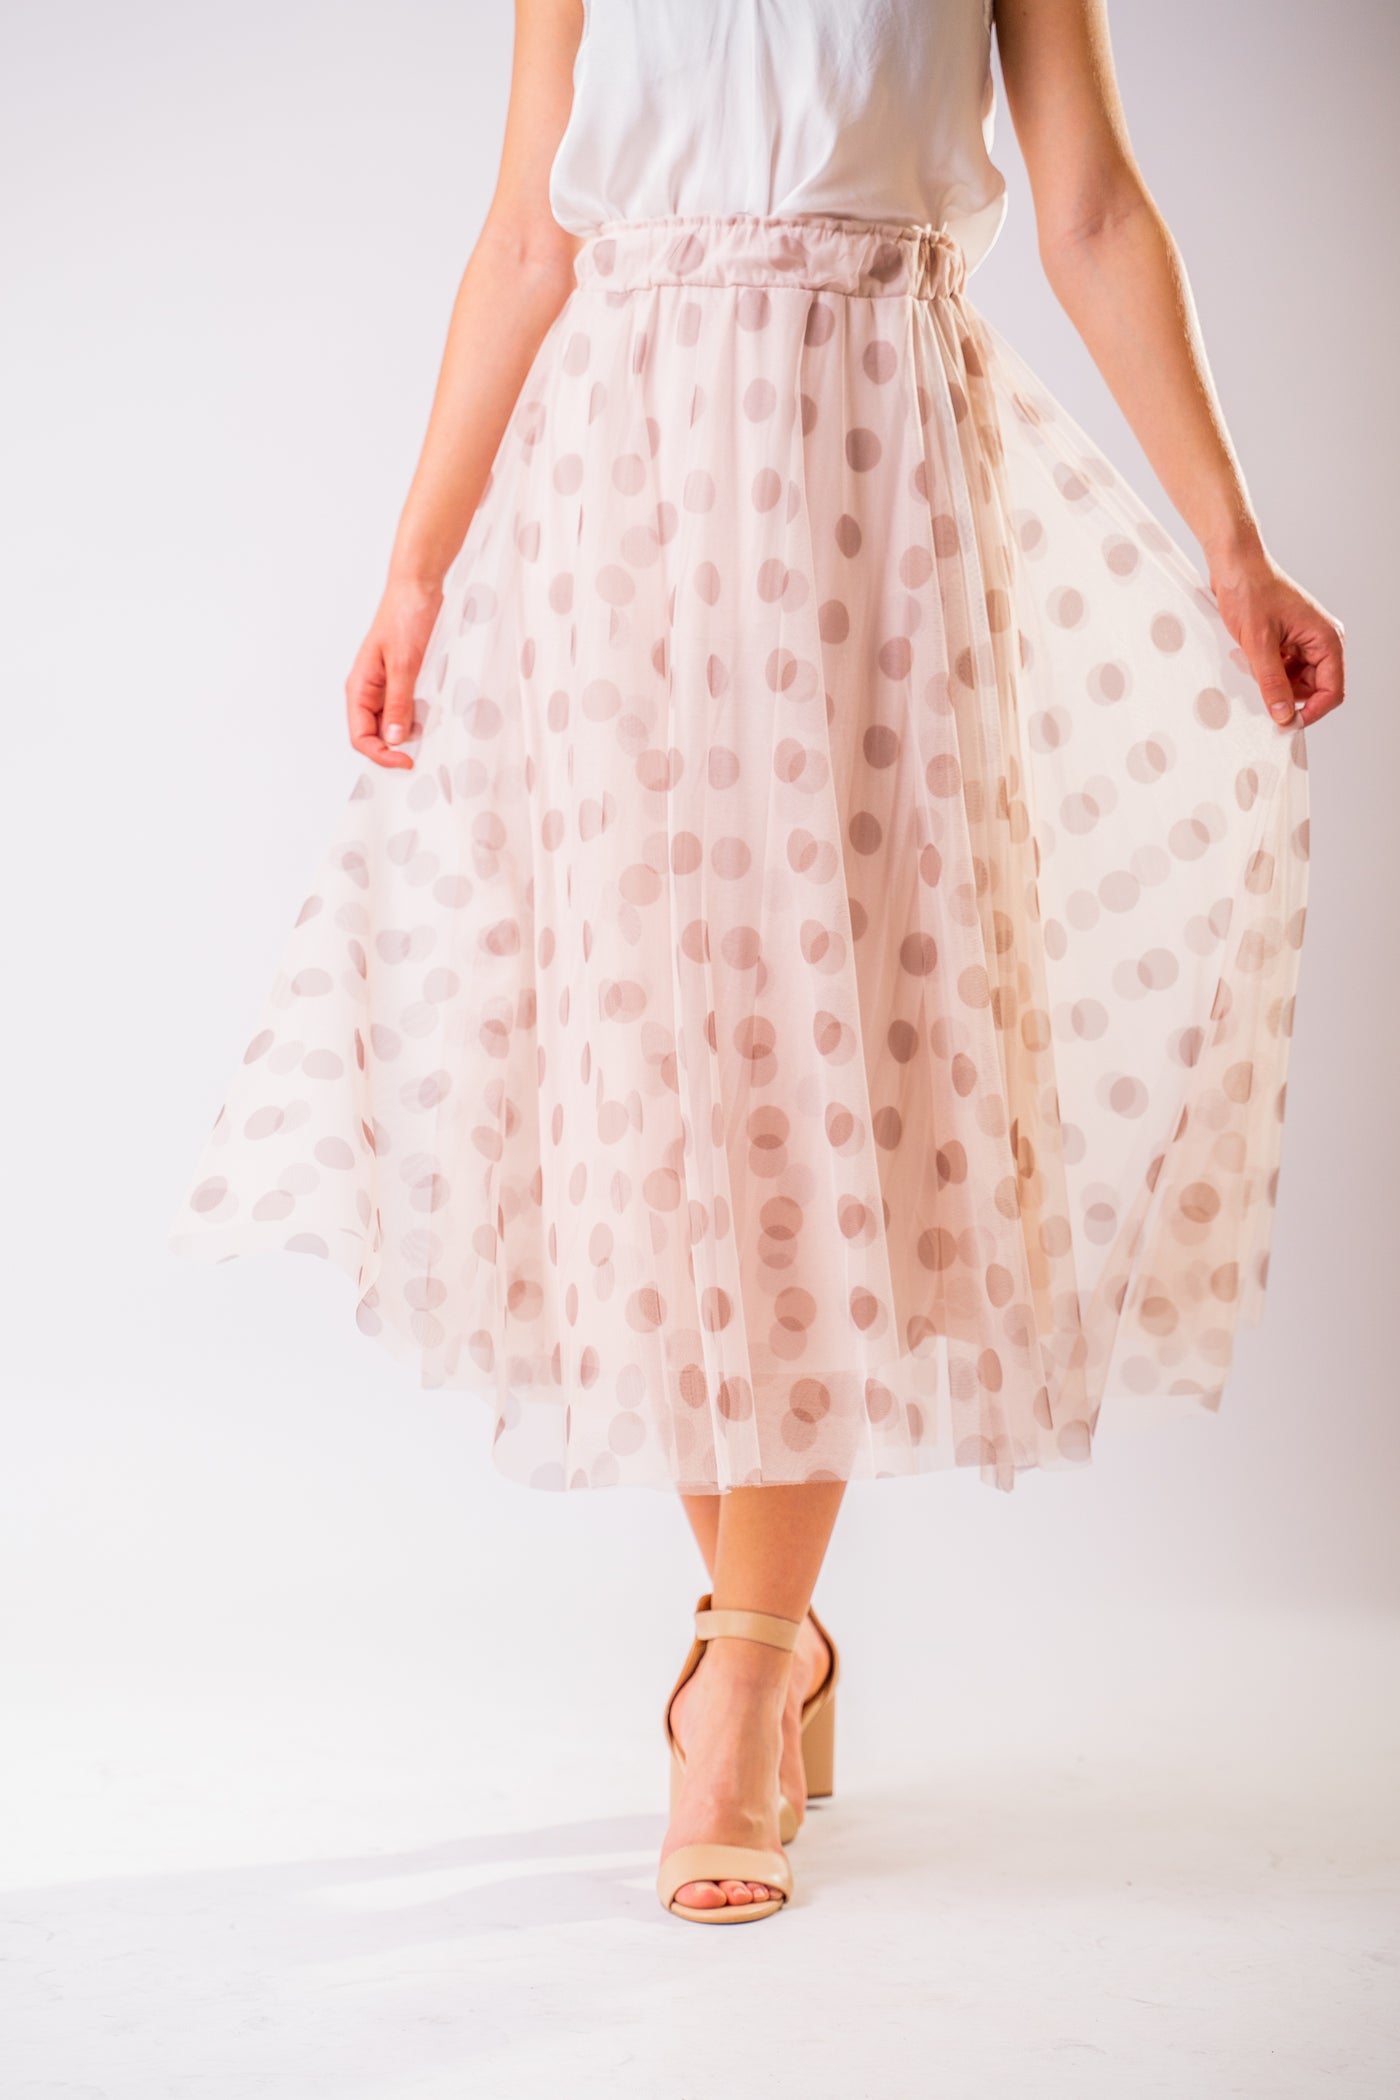 Bodkovaná tylová midi sukňa Eloise odfotená zblízka